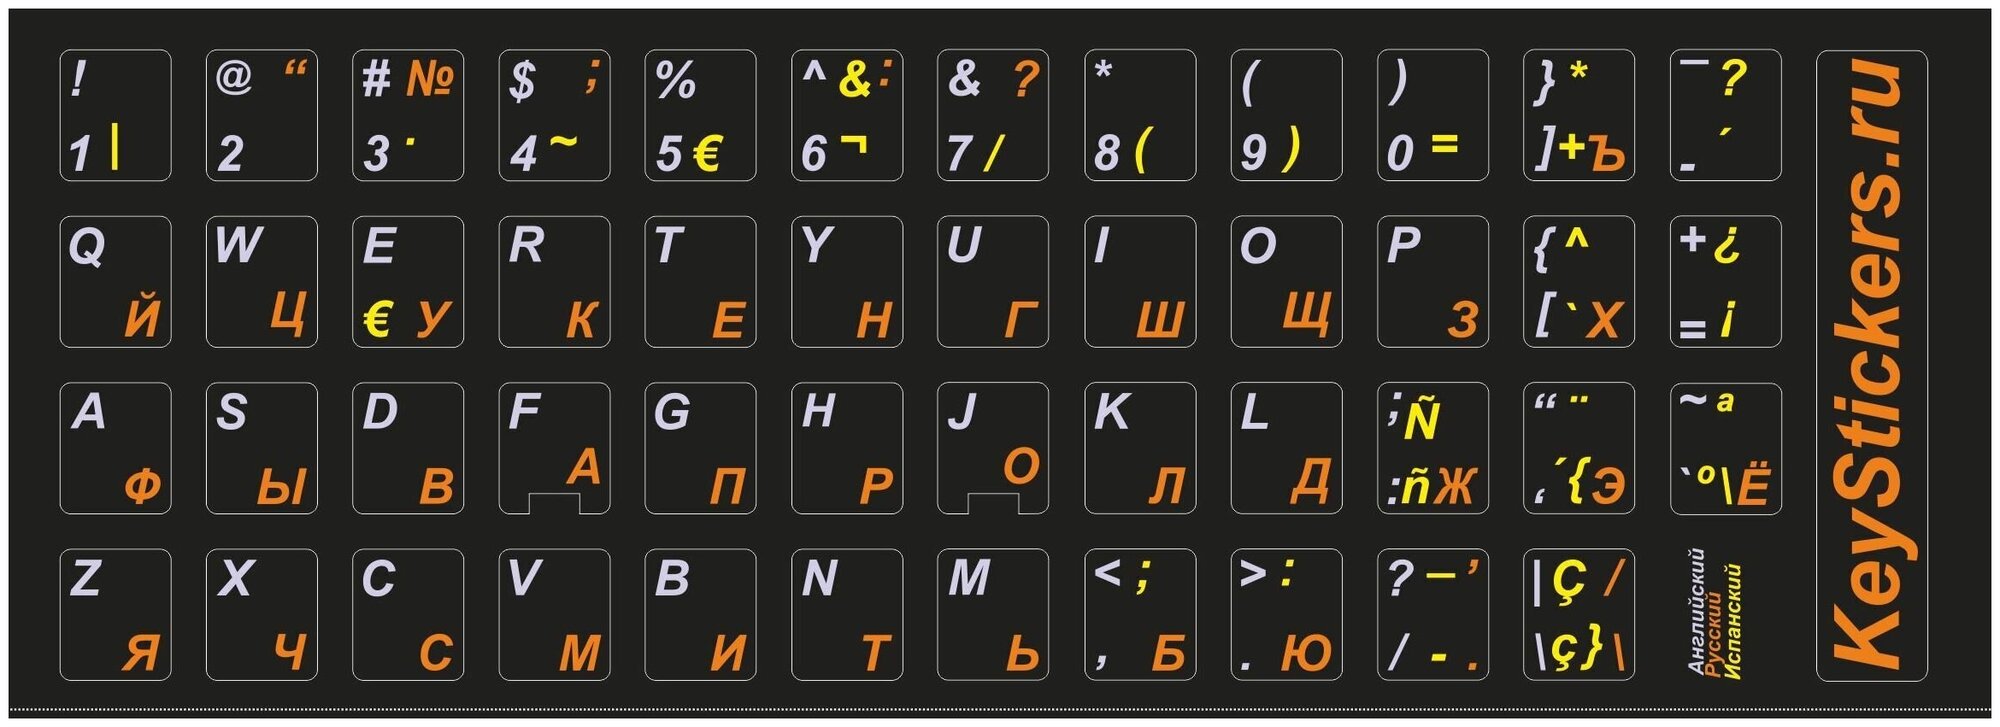 Испанский, английский, русский наклейки на клавиатуру для ноутбука, настольного компьютера, клавиатуры 11x13 мм